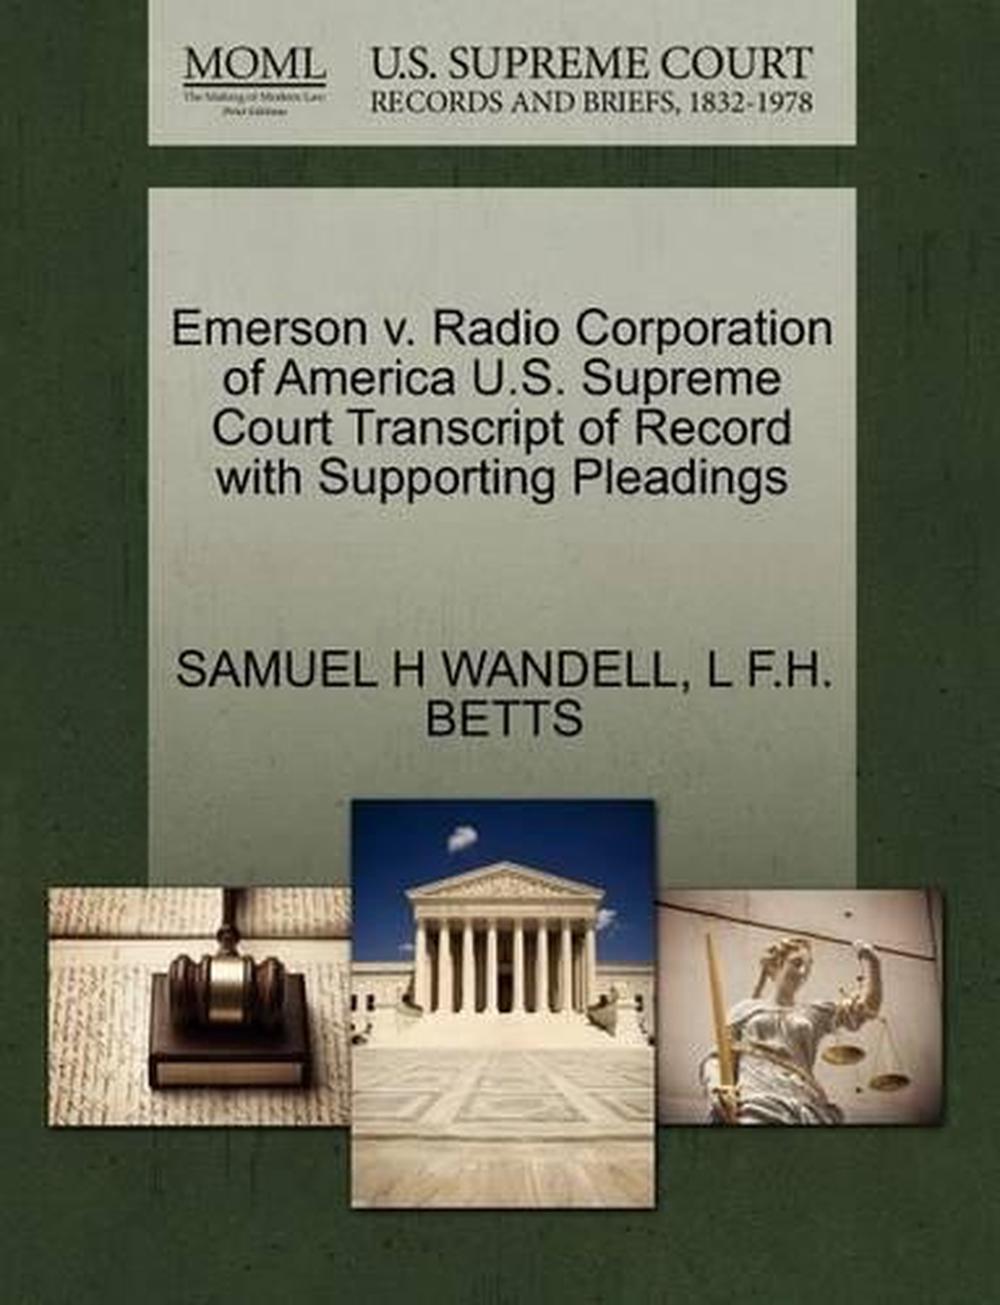 Emerson v. Radio Corporation of America U.S. Supreme Court Transcript of Record  - Picture 1 of 1